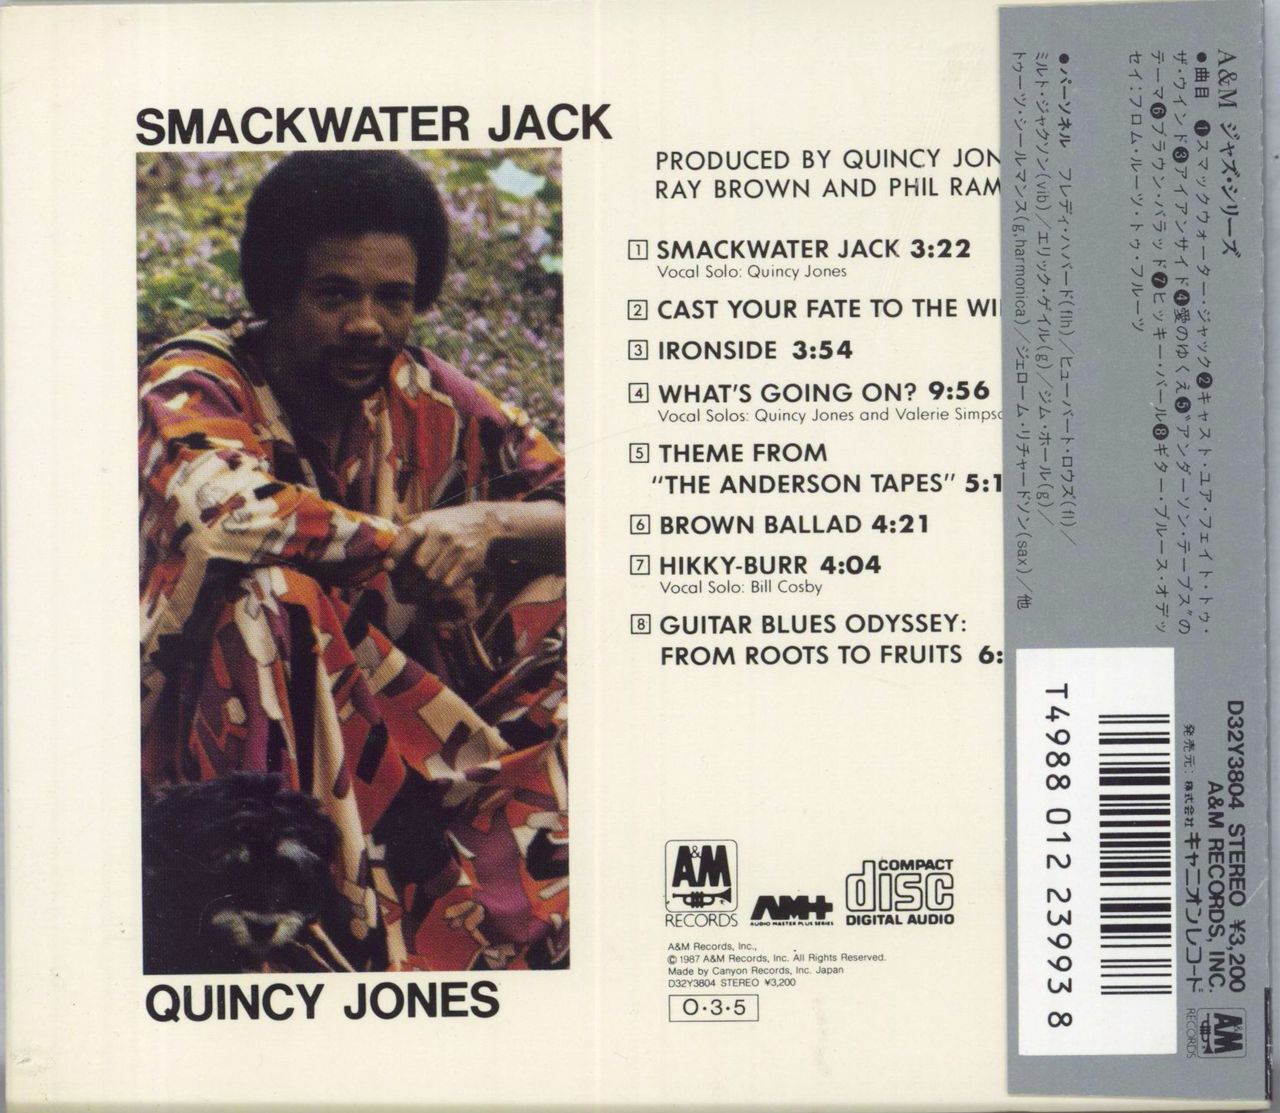 Quincy Jones Smackwater Jack Japanese CD album — RareVinyl.com